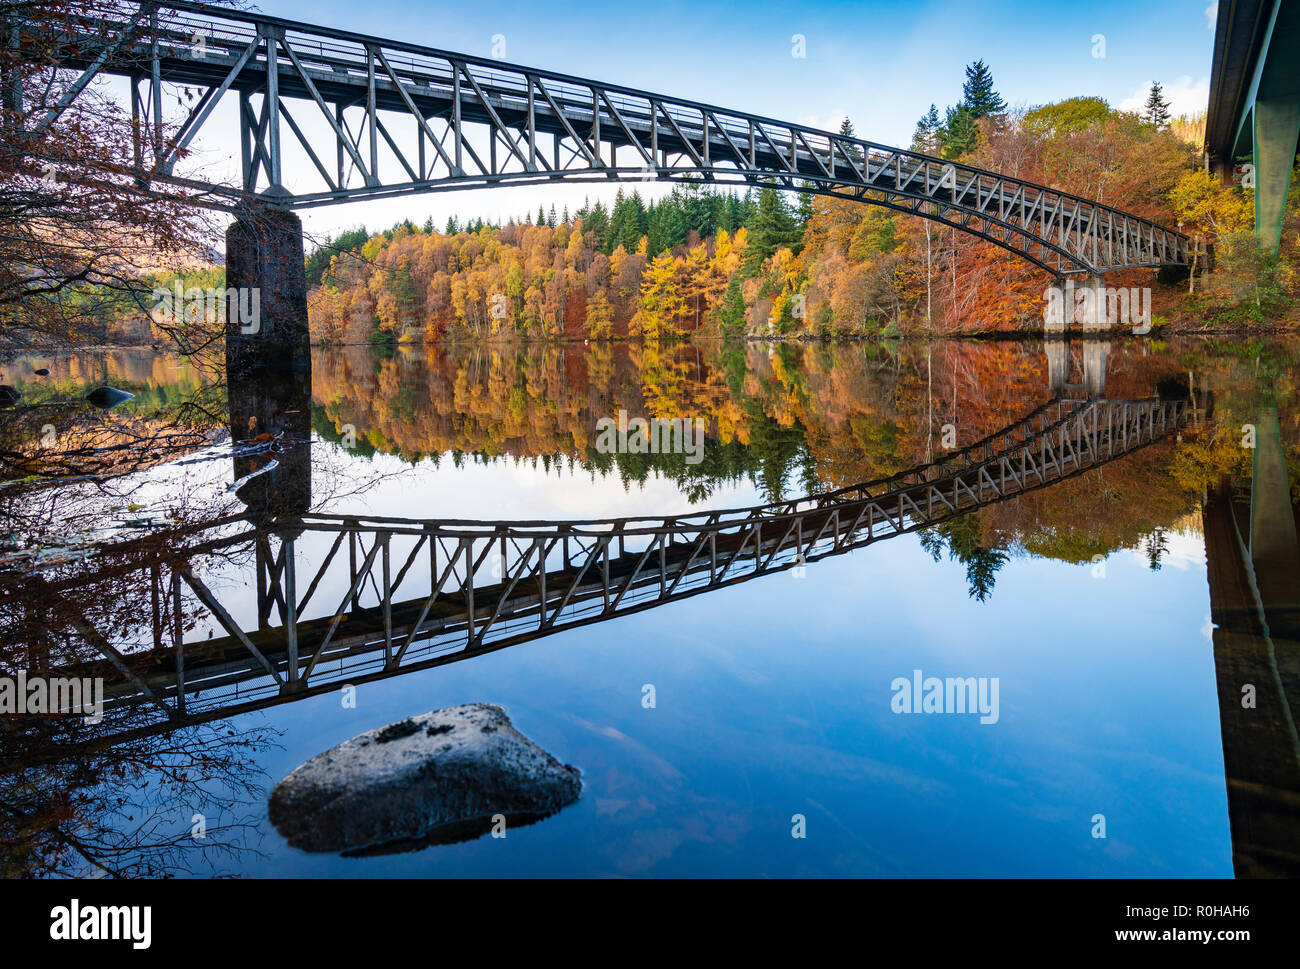 La fin de l'automne, les couleurs des arbres spectaculaires et le pont se reflète dans les eaux du Loch Faskally à Pitlochry, Perthshire, Écosse, Royaume-Uni. Banque D'Images